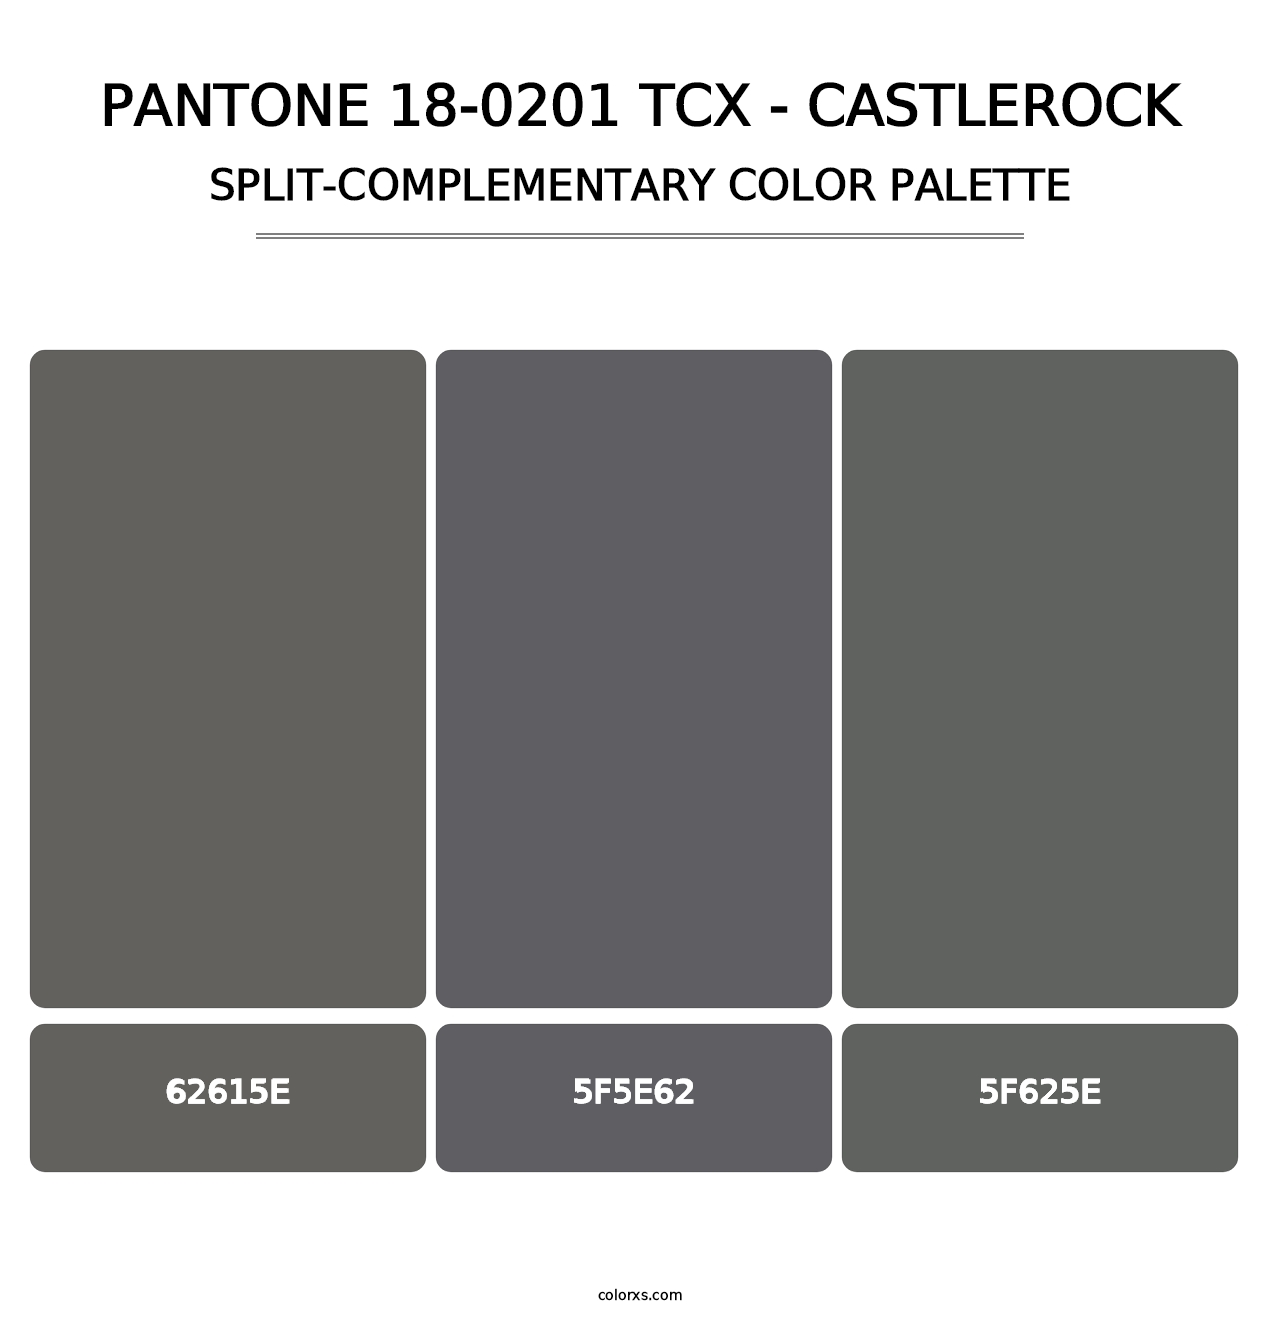 PANTONE 18-0201 TCX - Castlerock - Split-Complementary Color Palette